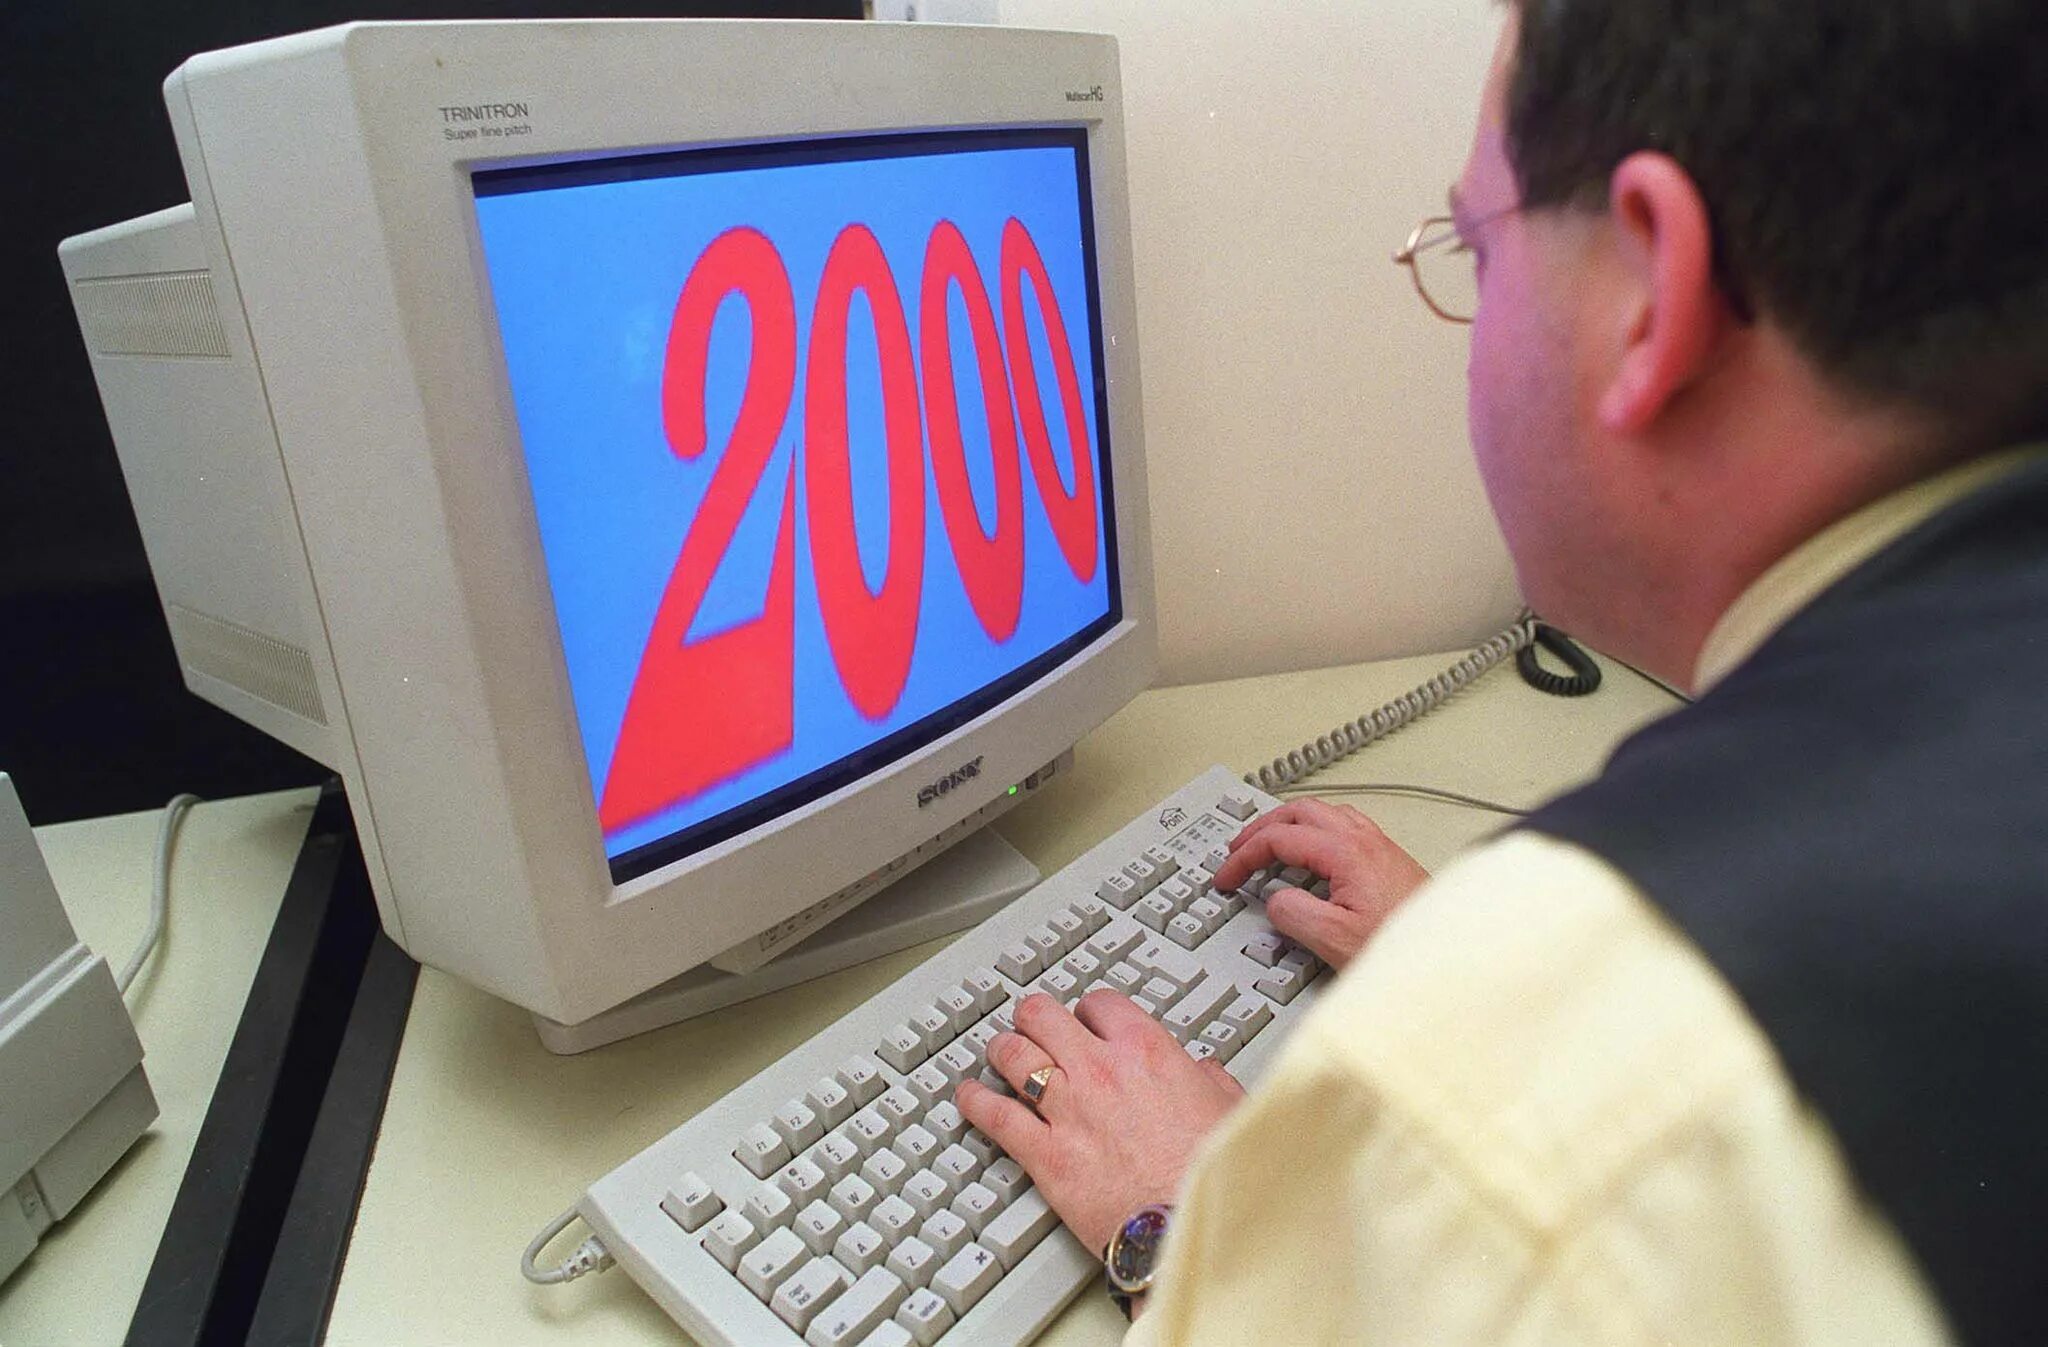 Проблемы 2000 х. Интернет 2000. Интернет в 2000 году. Y2k "Millenium Bug". Y2k интернет.